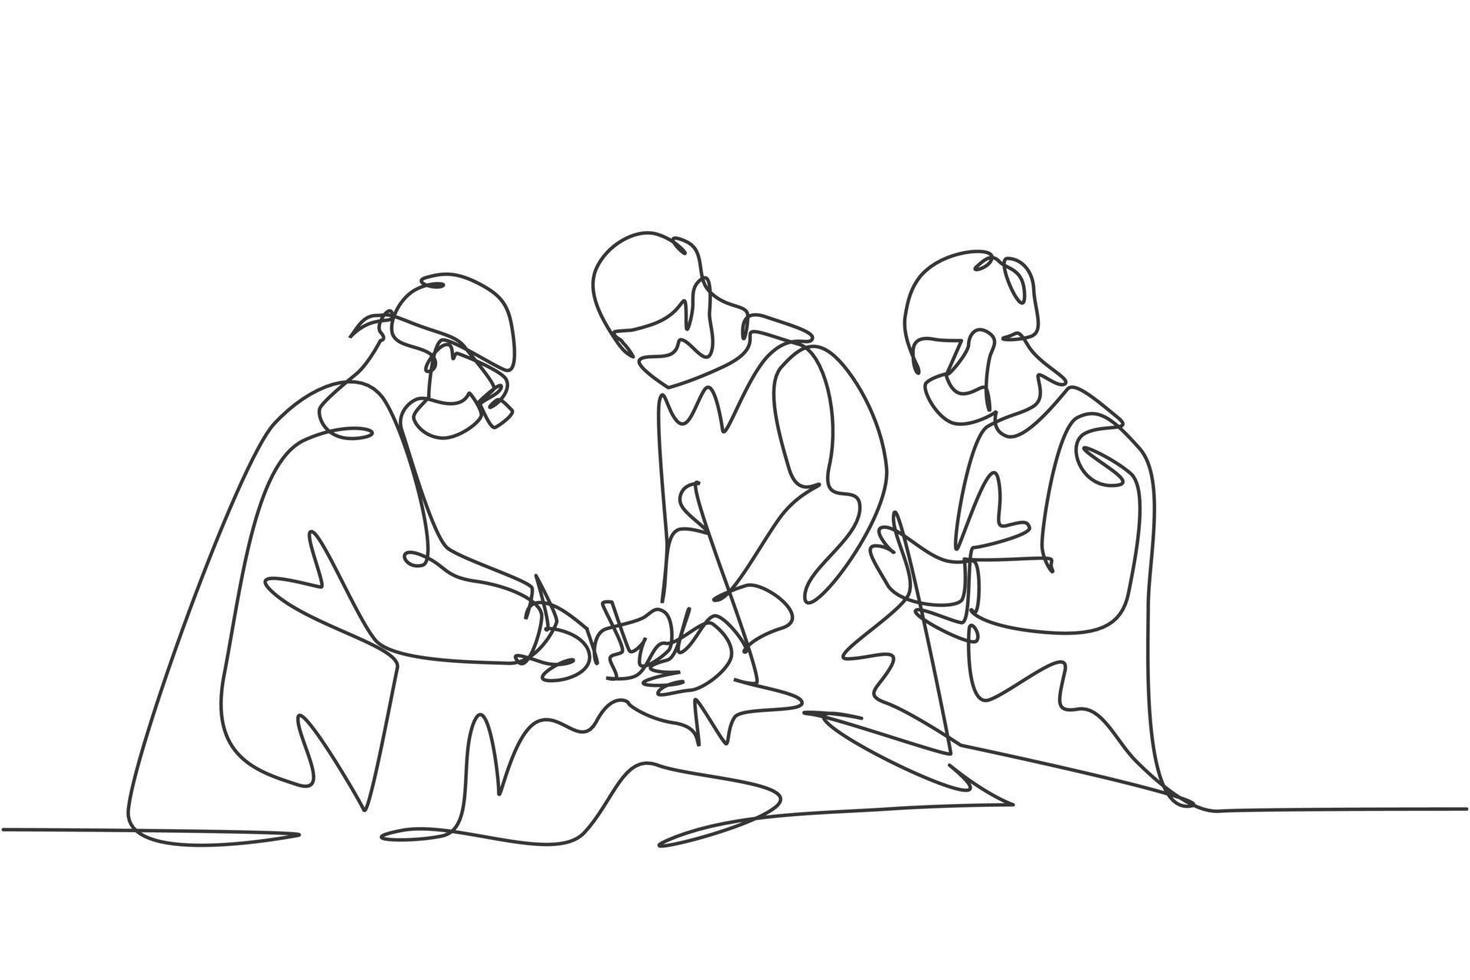 einzelne kontinuierliche einzeilige Zeichnungsgruppe des Teamchirurgenarztes, der dem Patienten mit kritischem Zustand eine Operation durchführt. Operationschirurgie-Konzept eine Linie zeichnen Design-Vektor-Illustration vektor